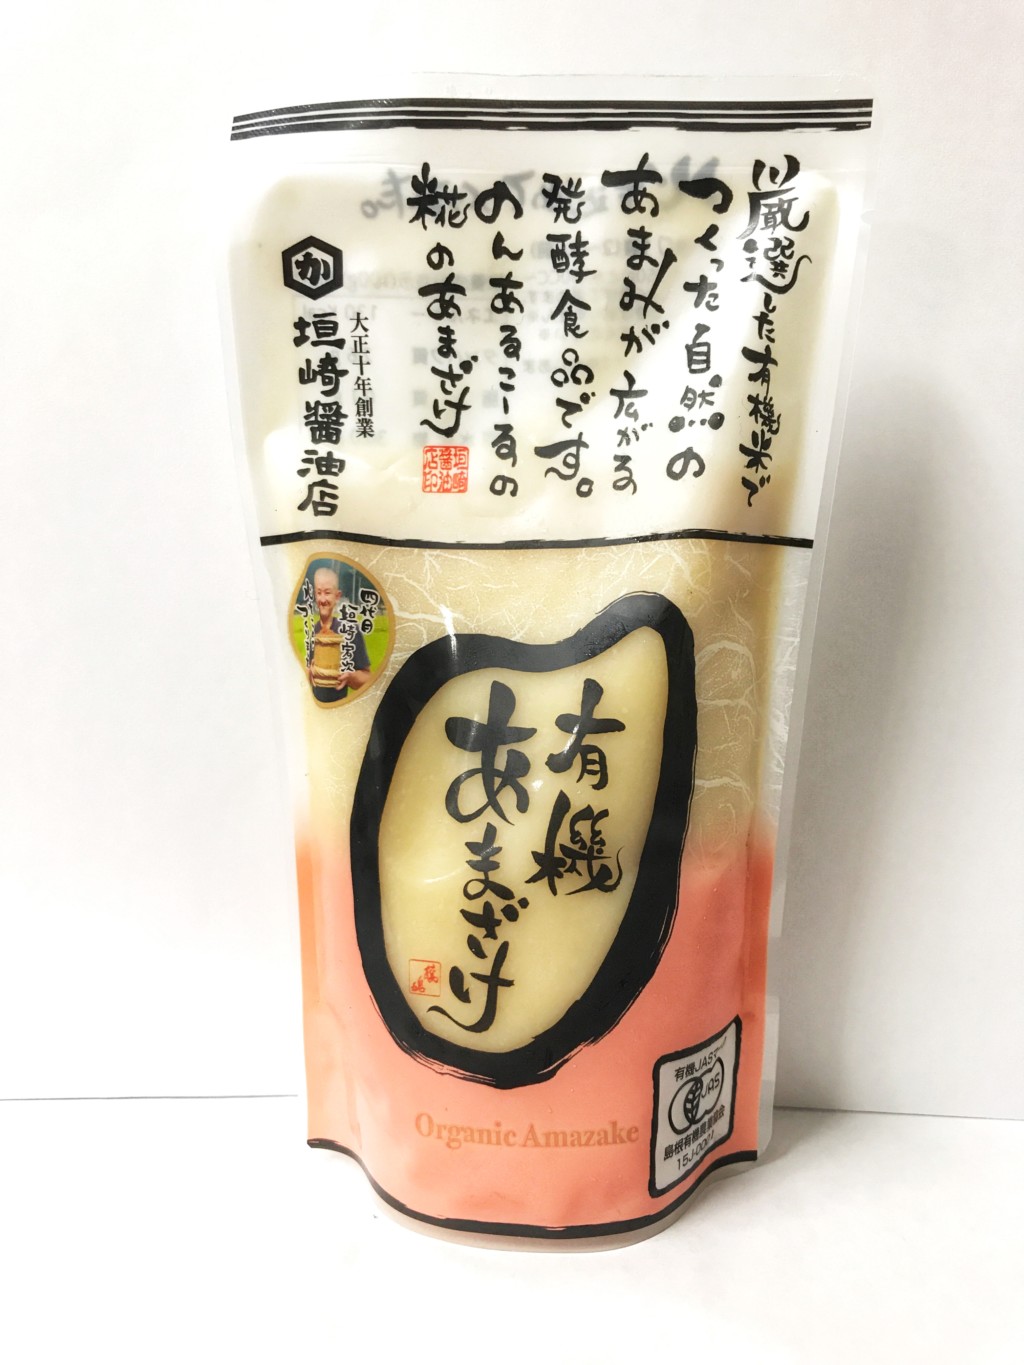 垣崎醤油店の濃縮タイプの米麹甘酒『有機あまざけ』